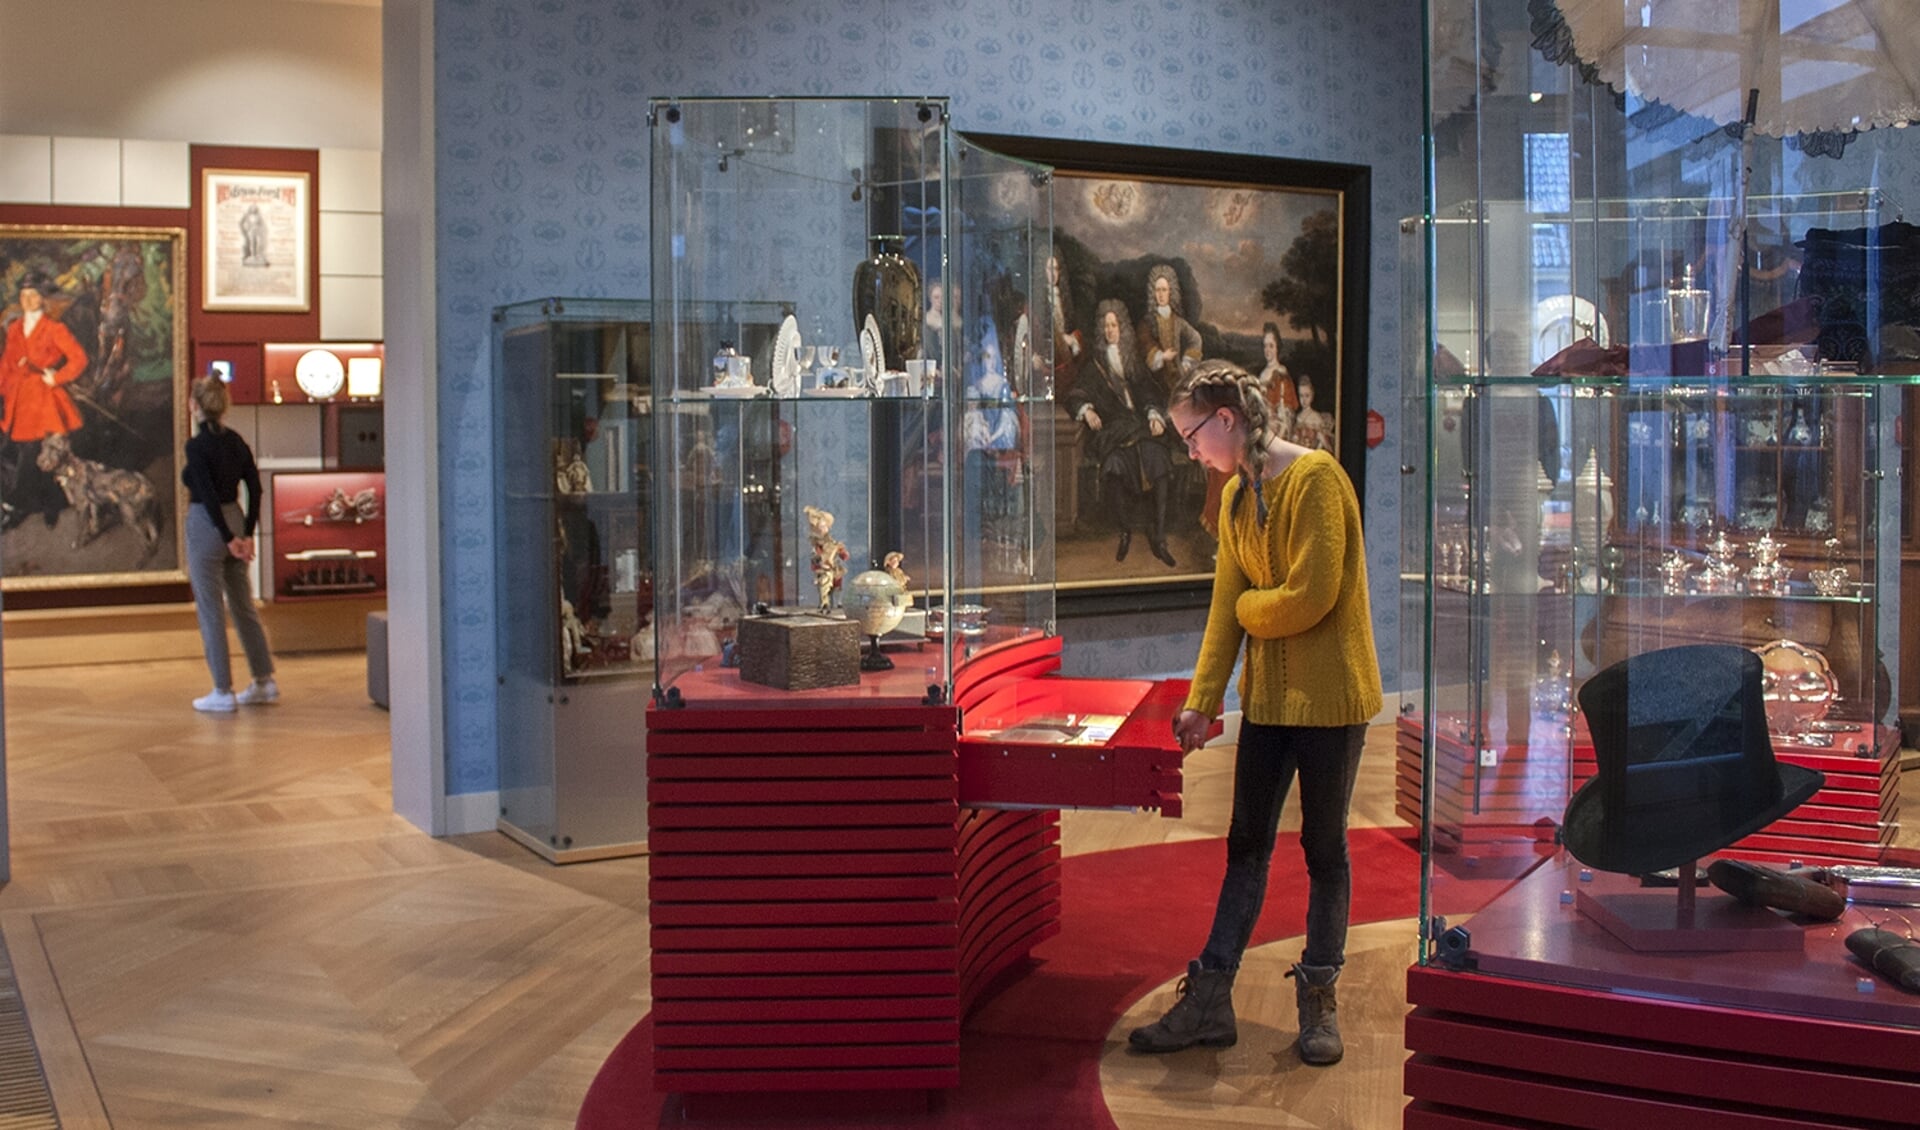 Musea Zutphen, Stedelijk Museum Zutphen en Museum Henriette Polak zijn tijdens Monumentenweekend gratis toegankelijk. Foto: PR